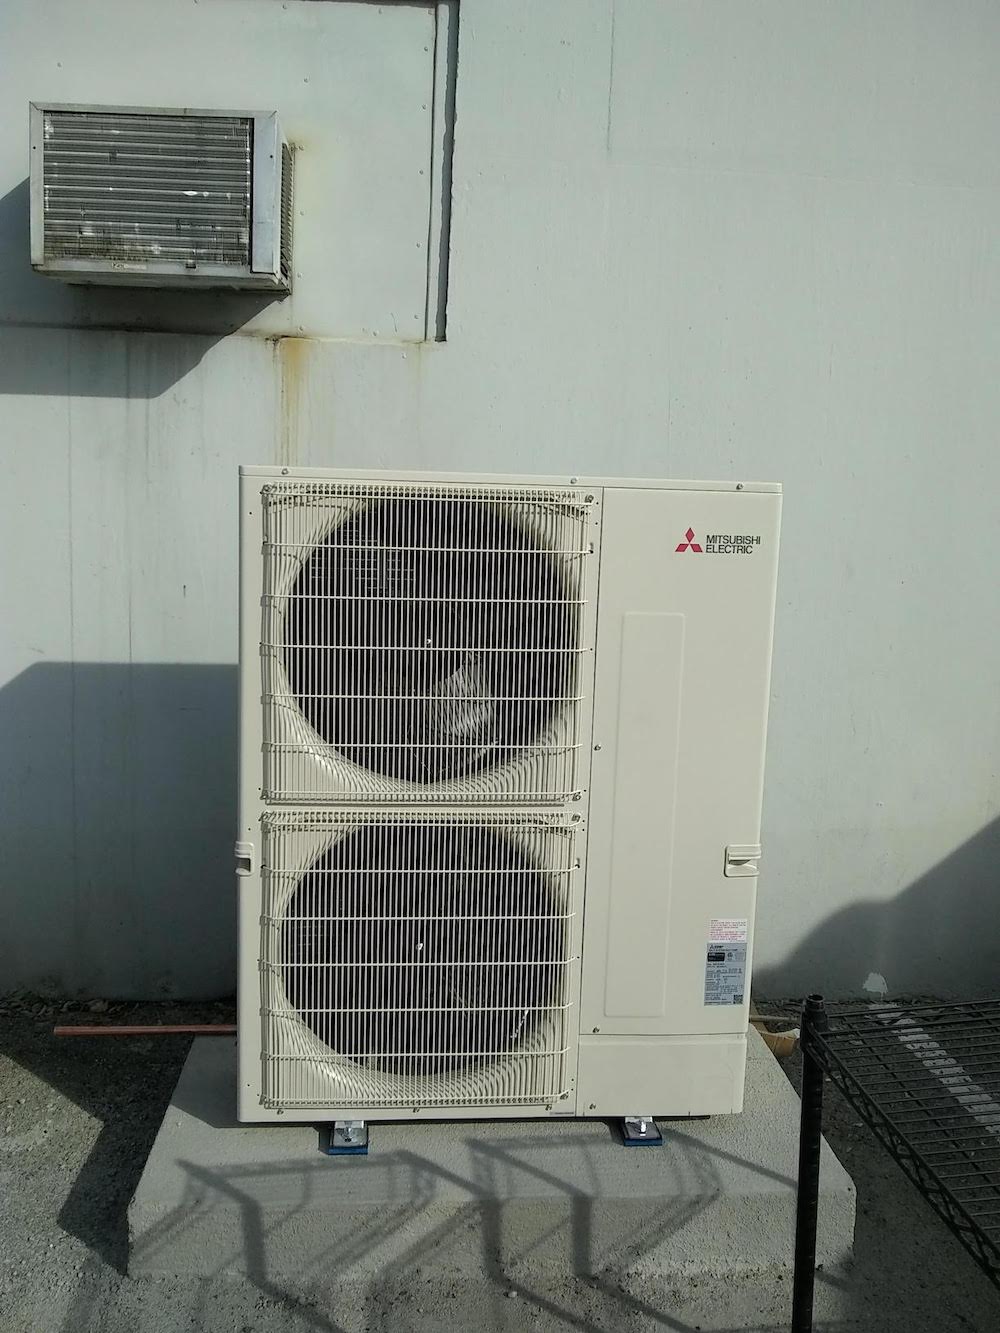 Image of an AC repair